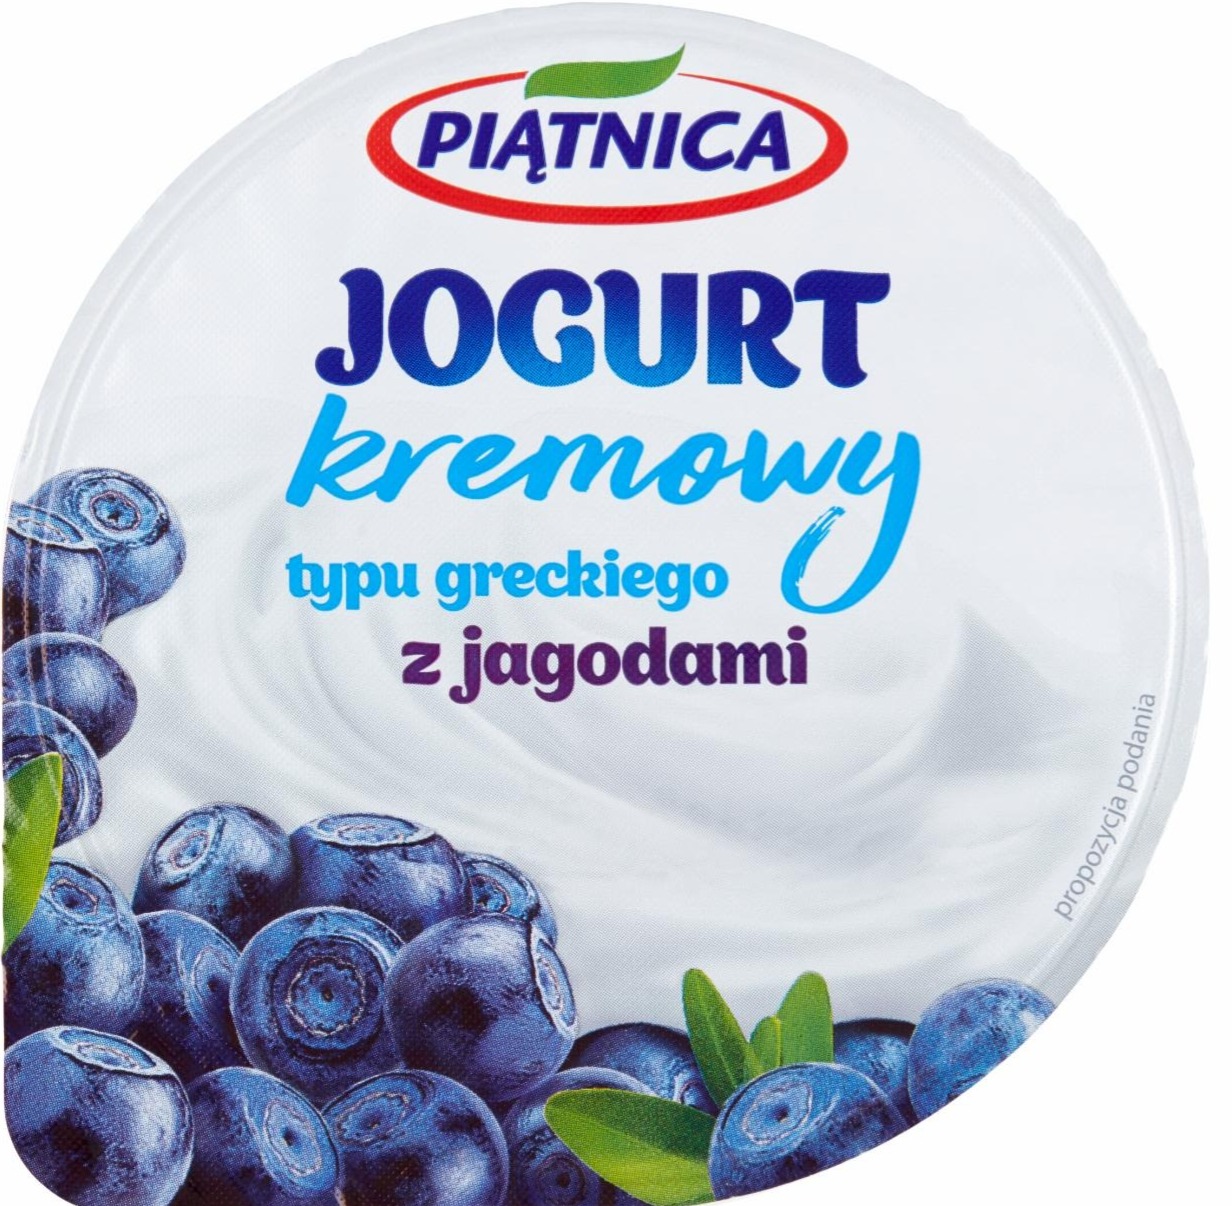 Zdjęcia - Jogurt kremowy typu greckiego z jagodami 150 g Piątnica